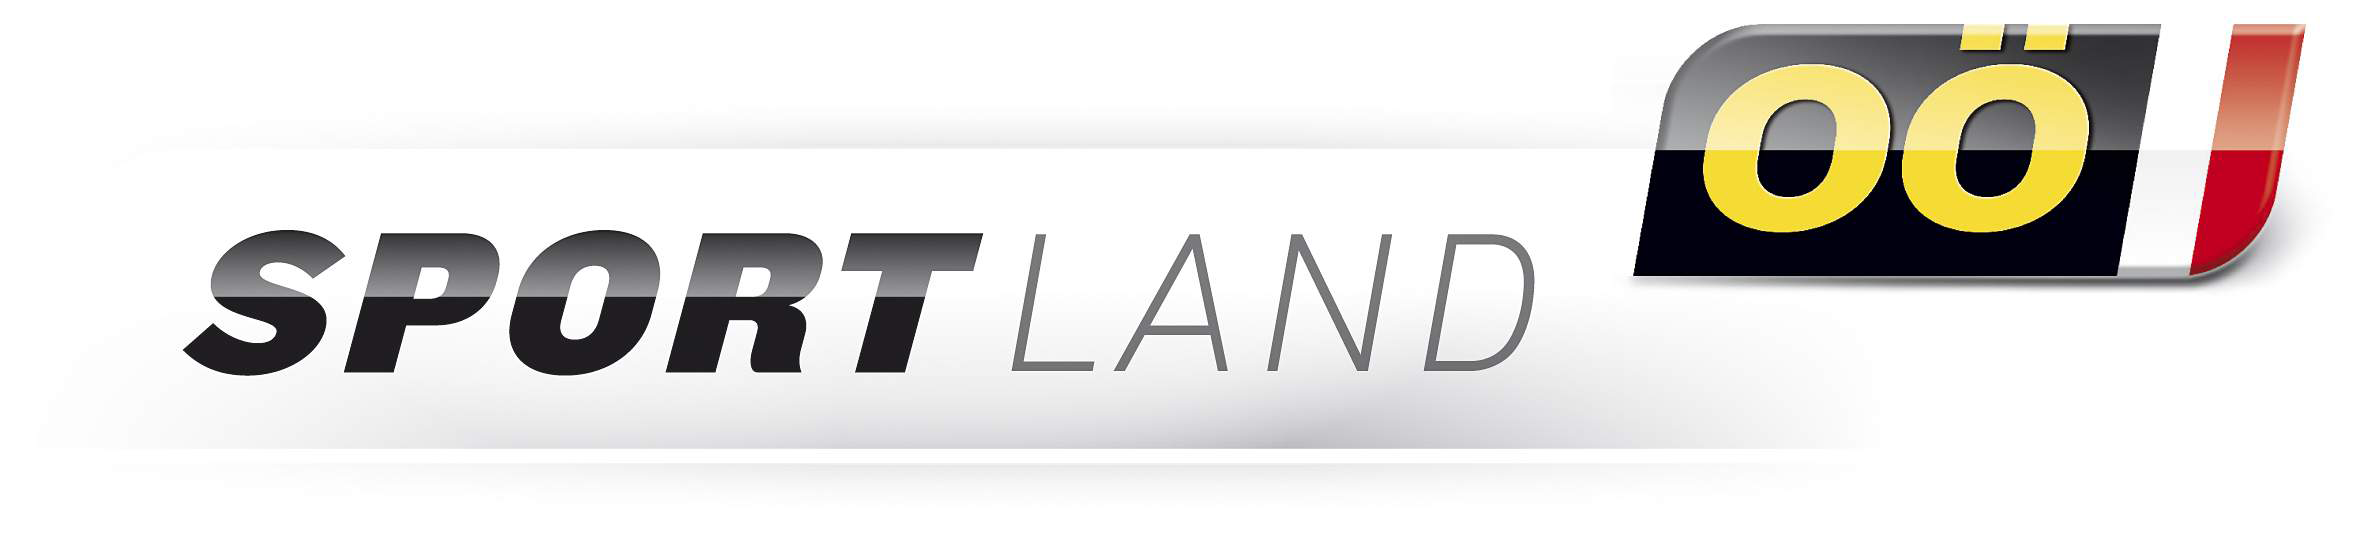 logo_sportland_ooe_2020.png